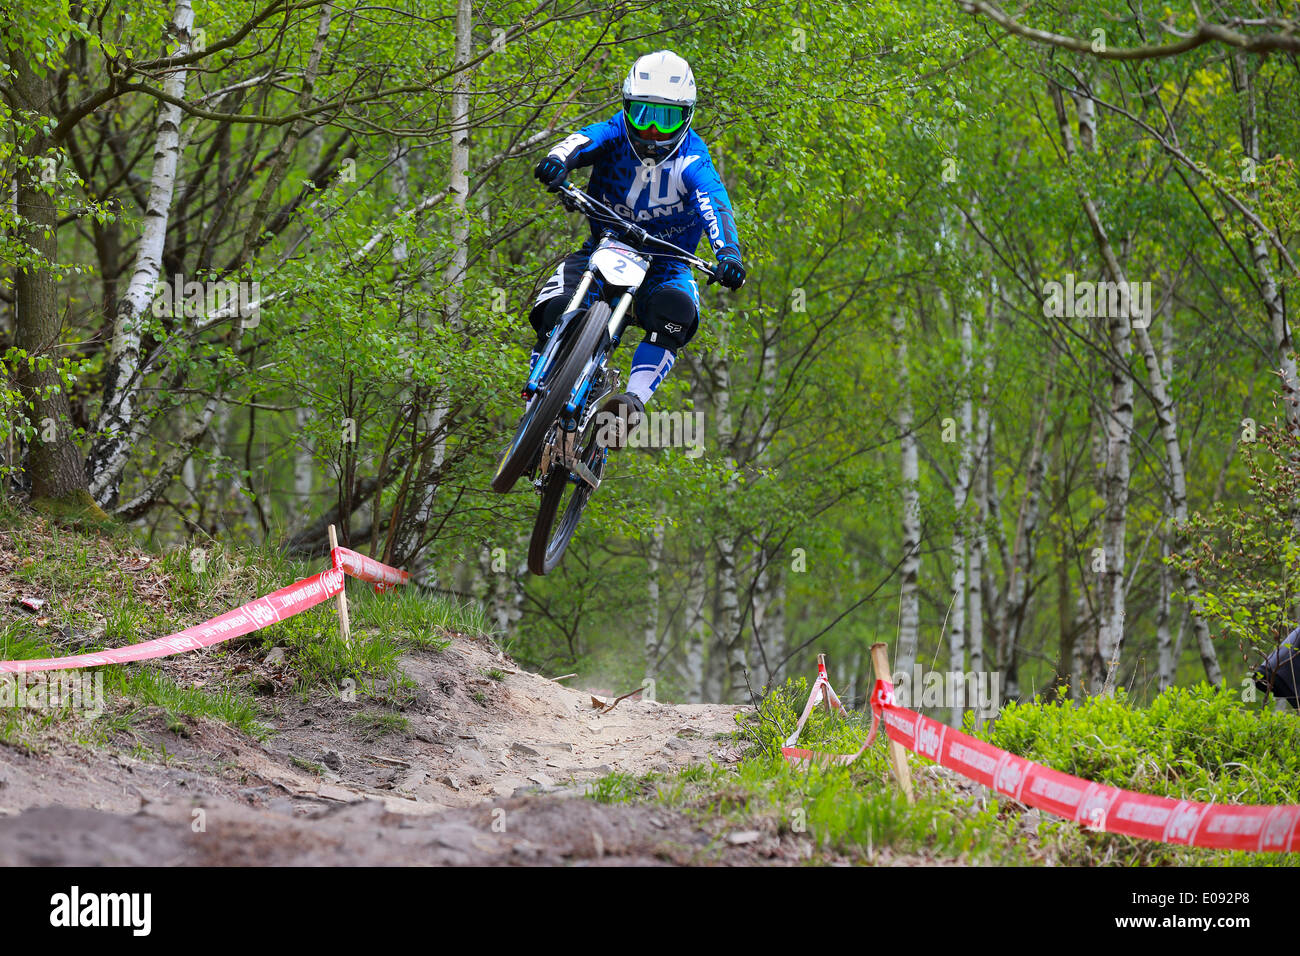 Rider saut sur chemin de terre. Descente VTT race à Chaudfontaine en Belgique, championnat national. Banque D'Images